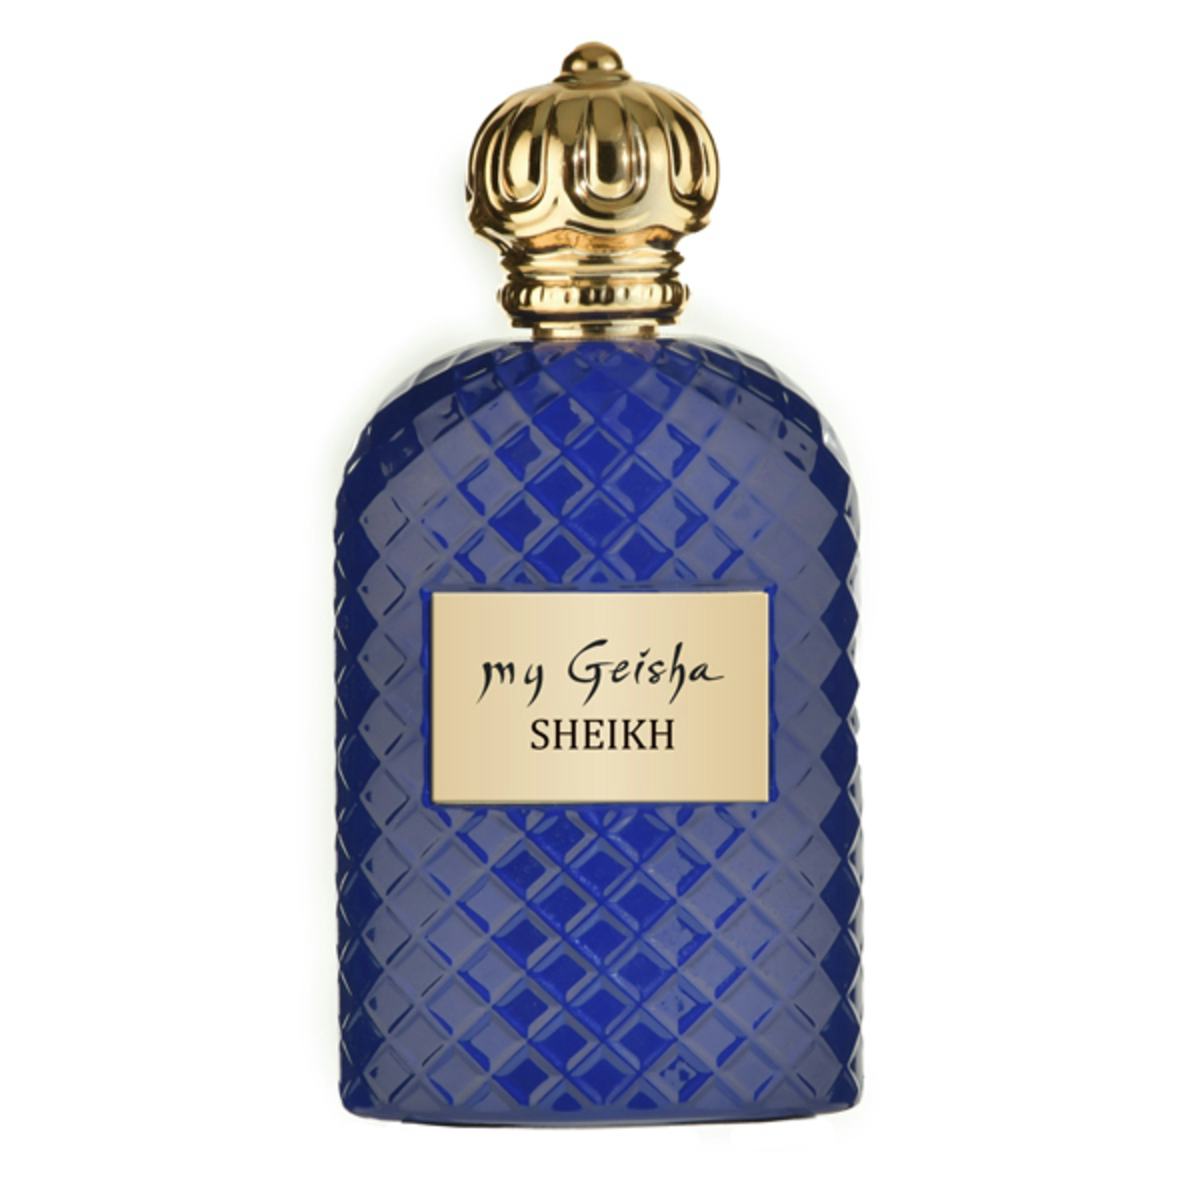 Extrait de parfum SHEIKH 100 ml, My Geisha Genève, Genève, image 1 | Mimelis